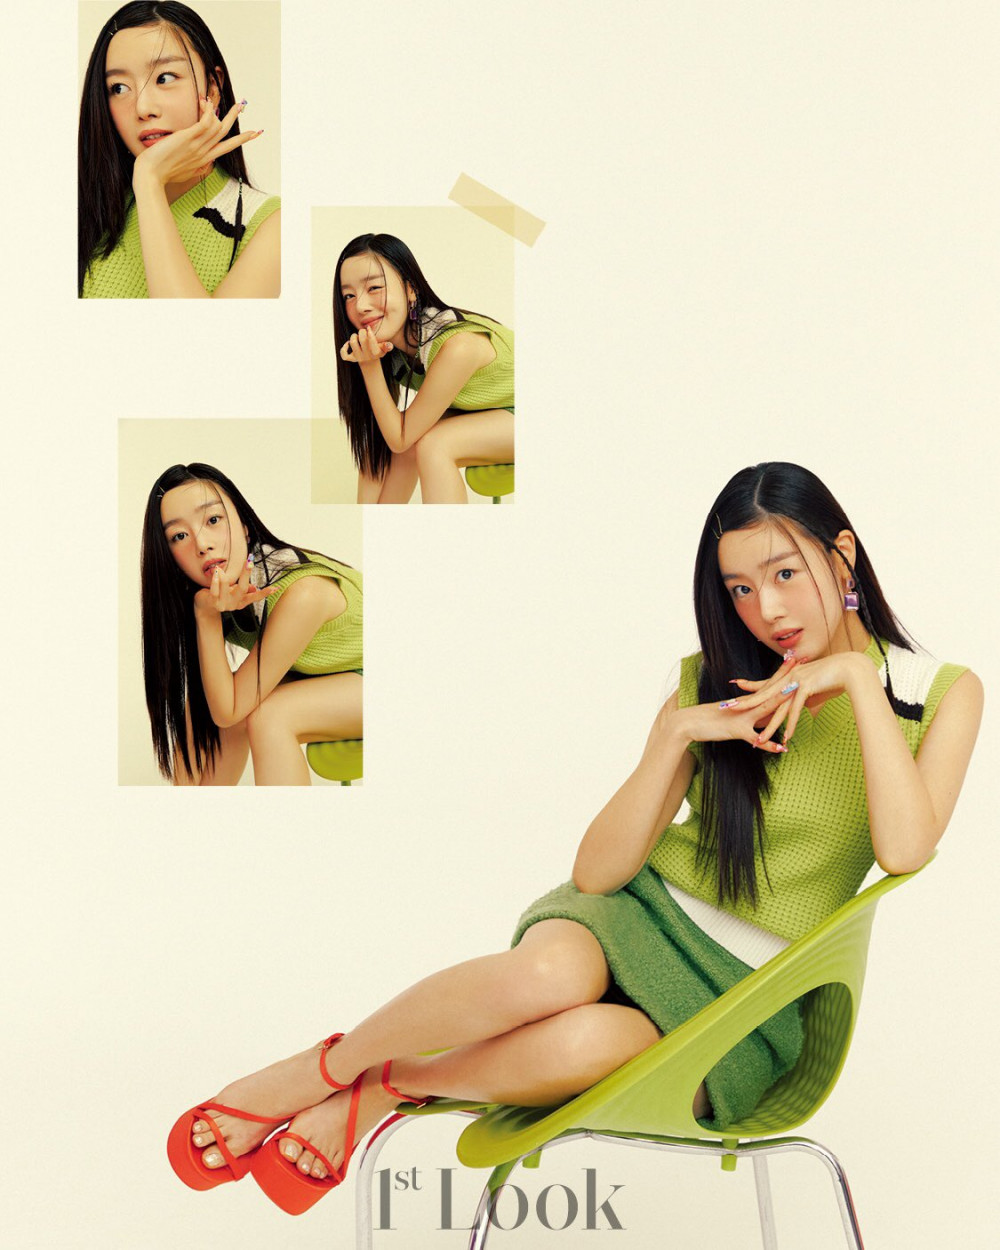 Яркая ретро-фотосессия актрис дорамы «Работай позже, пей сейчас» для журнала 1st Look